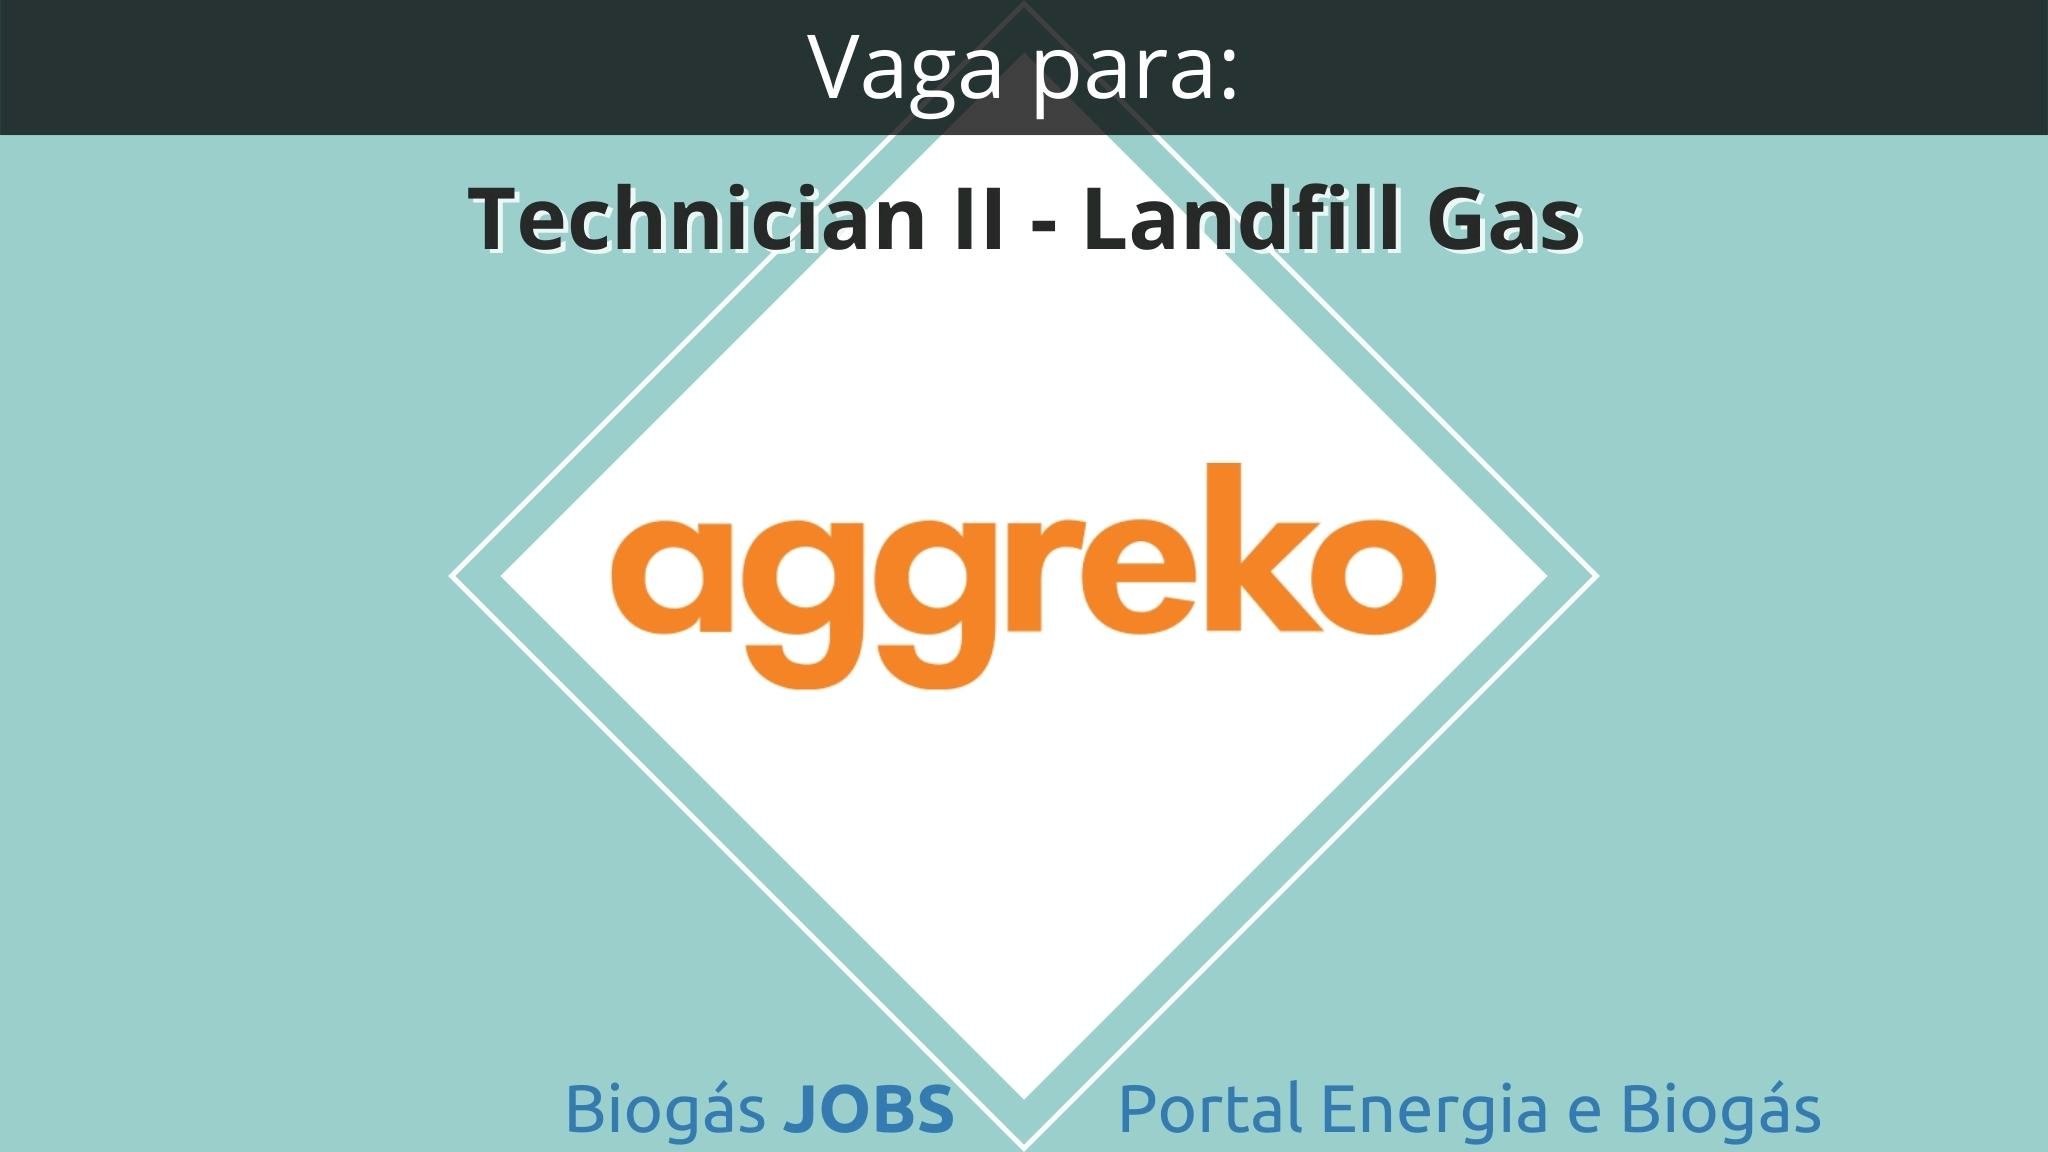 Vaga para Technician II - Landfill Gas